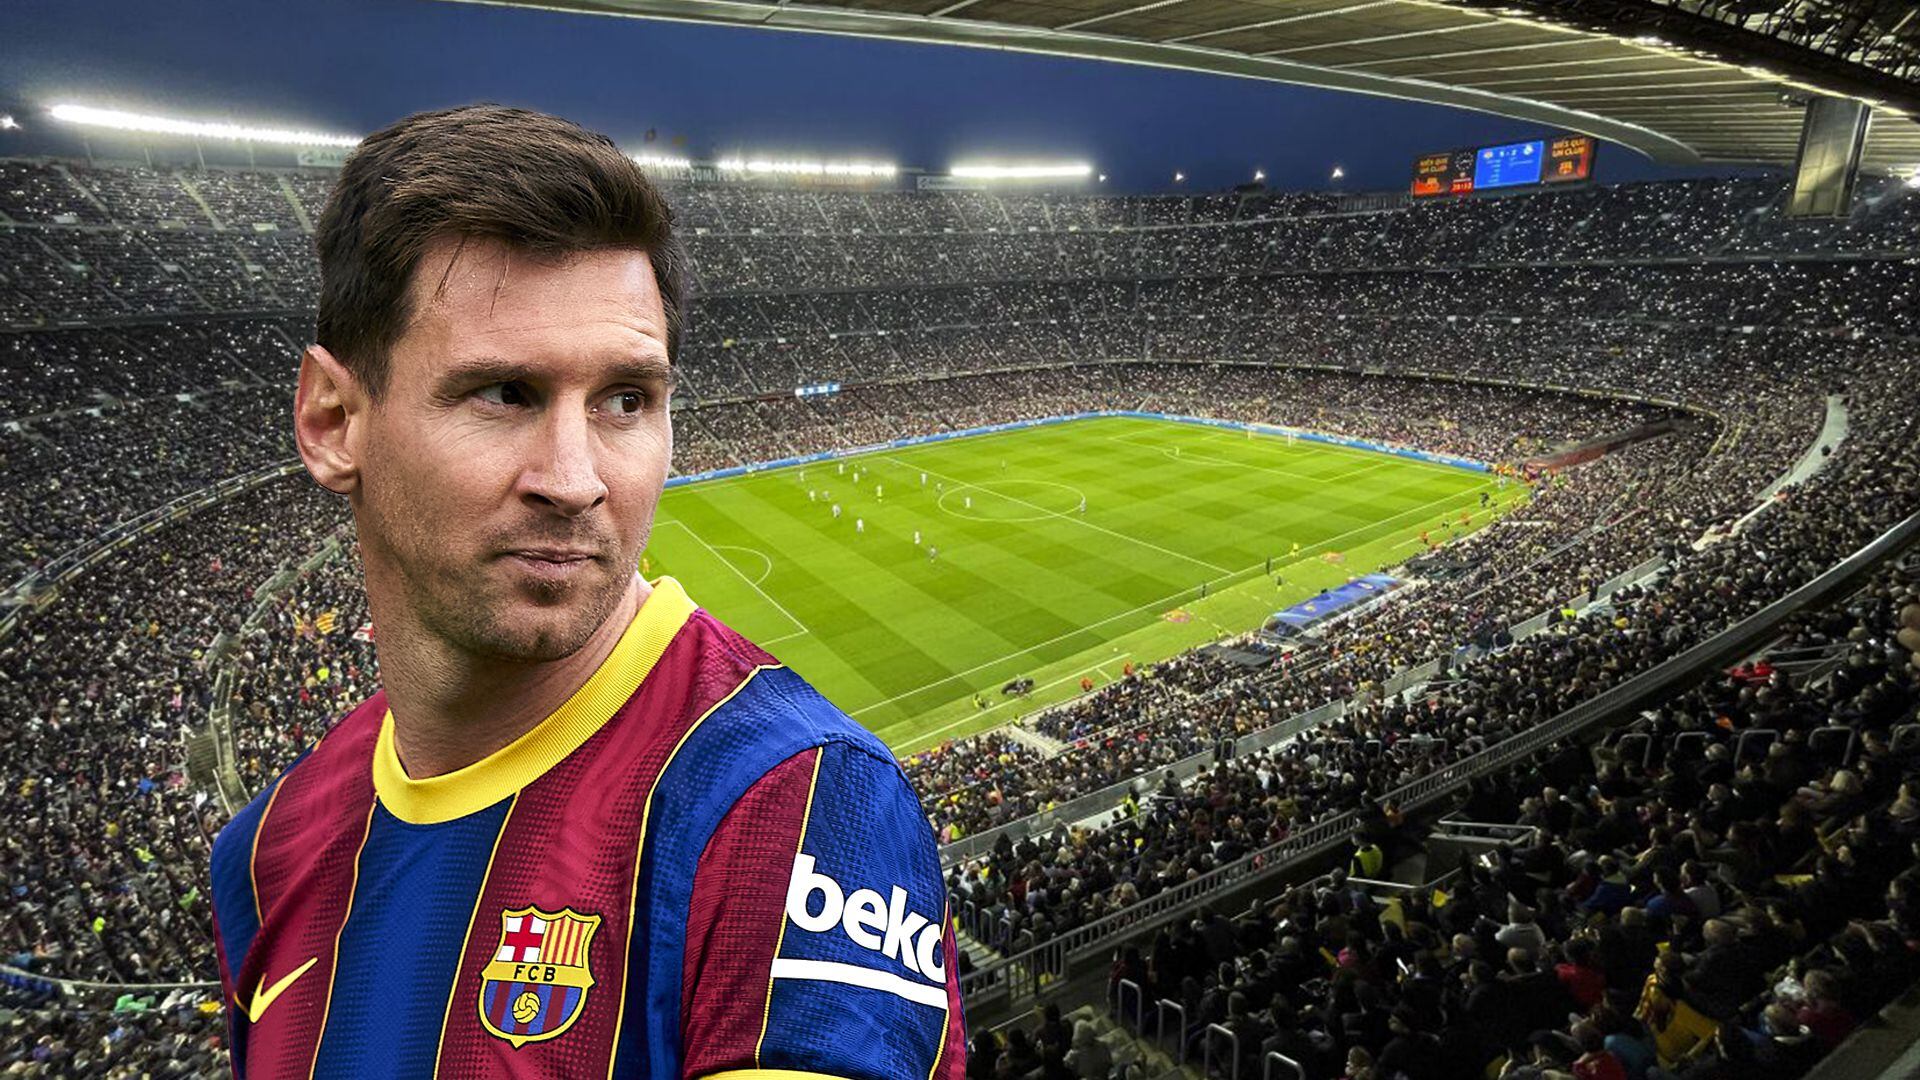 El grito de guerra de los aficionados del Barcelona, que volvieron a pedir por Messi